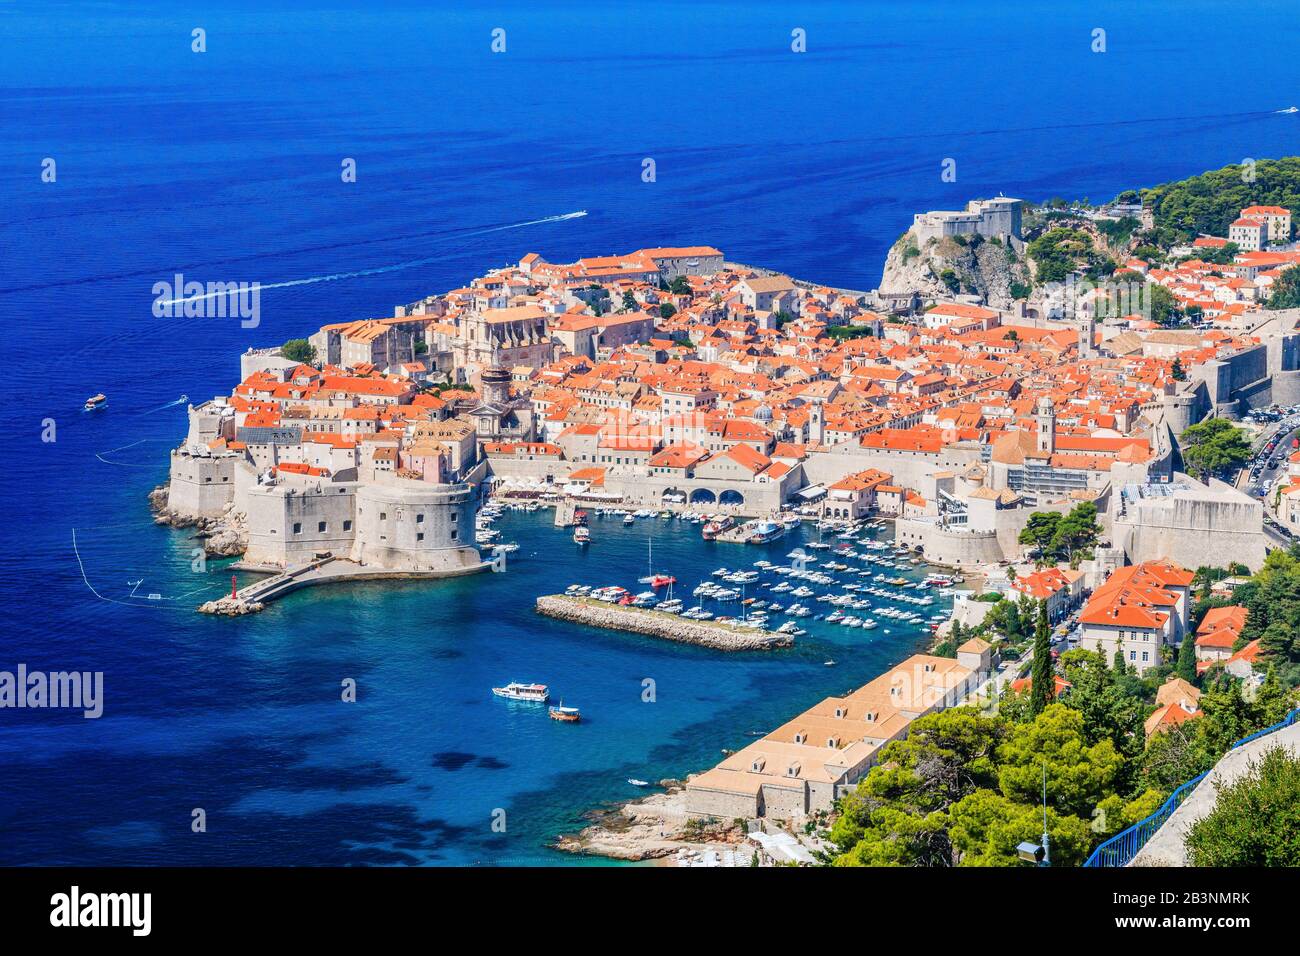 Dubrovnik, Kroatien. Malerische Aussicht auf die Altstadt (mittelalterliche Ragusa) und dalmatinische Küste des Adriatischen Meeres. Stockfoto